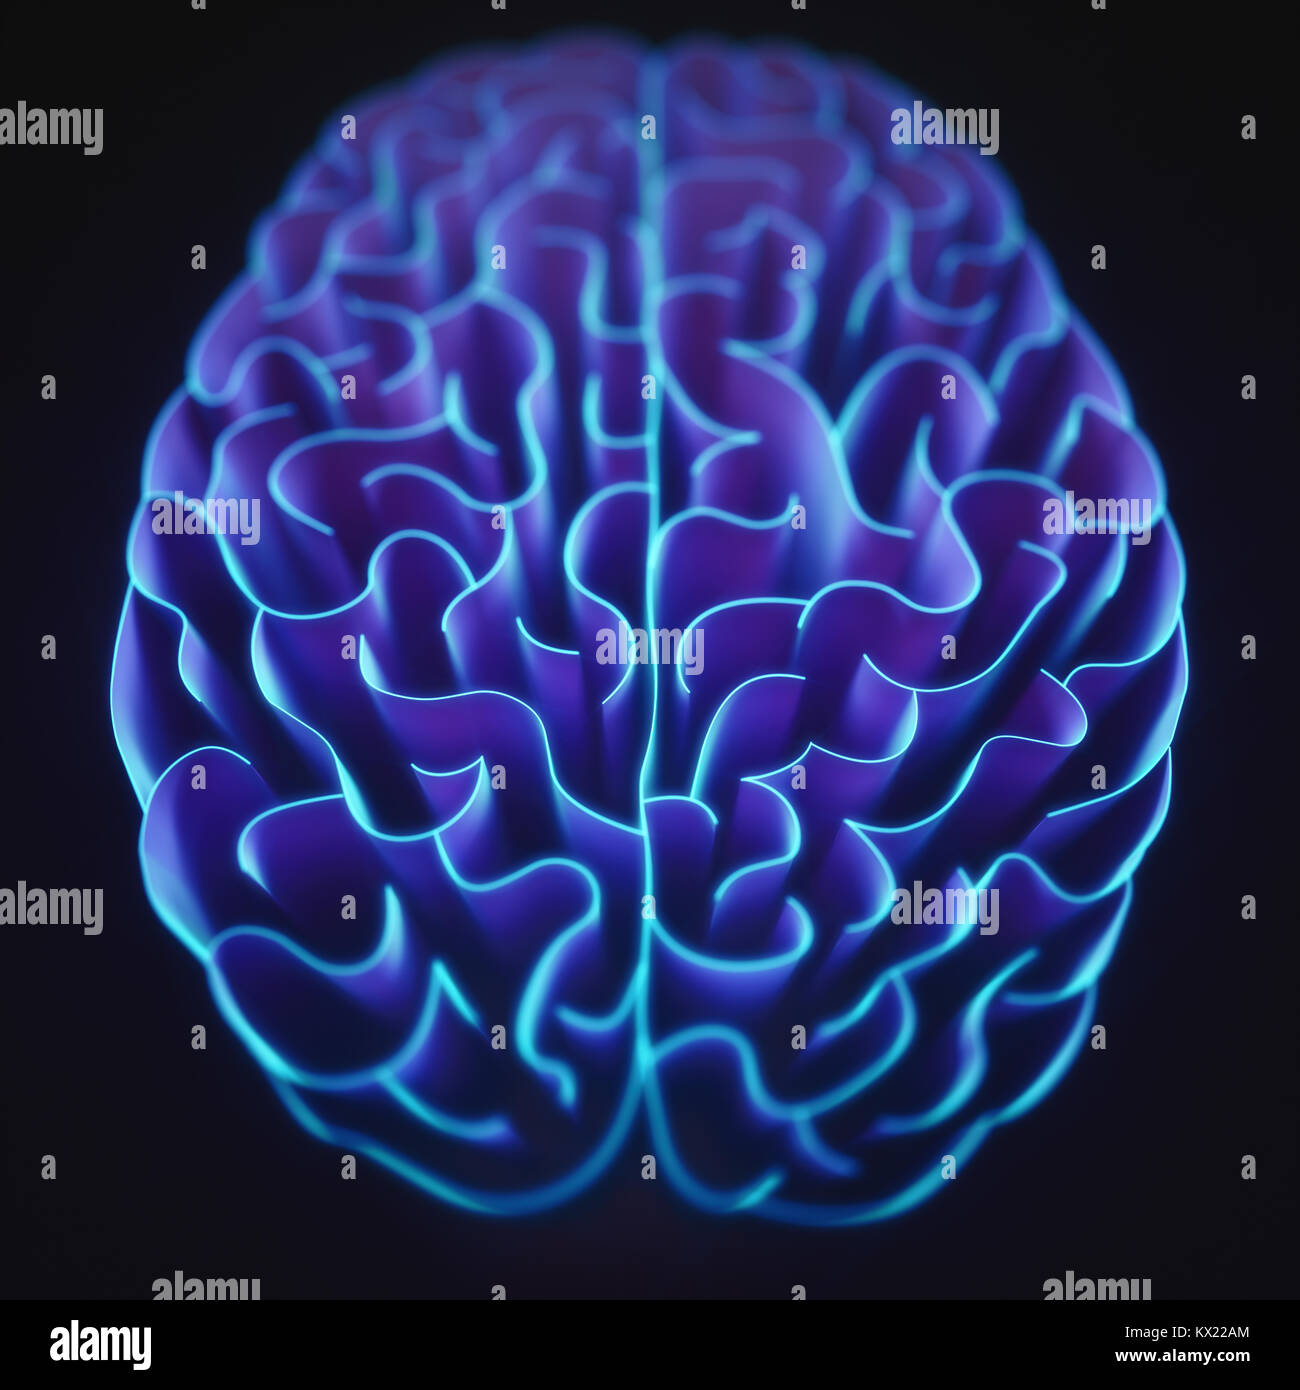 Le linee ondulate nella forma del cervello umano, illustrazione. Foto Stock